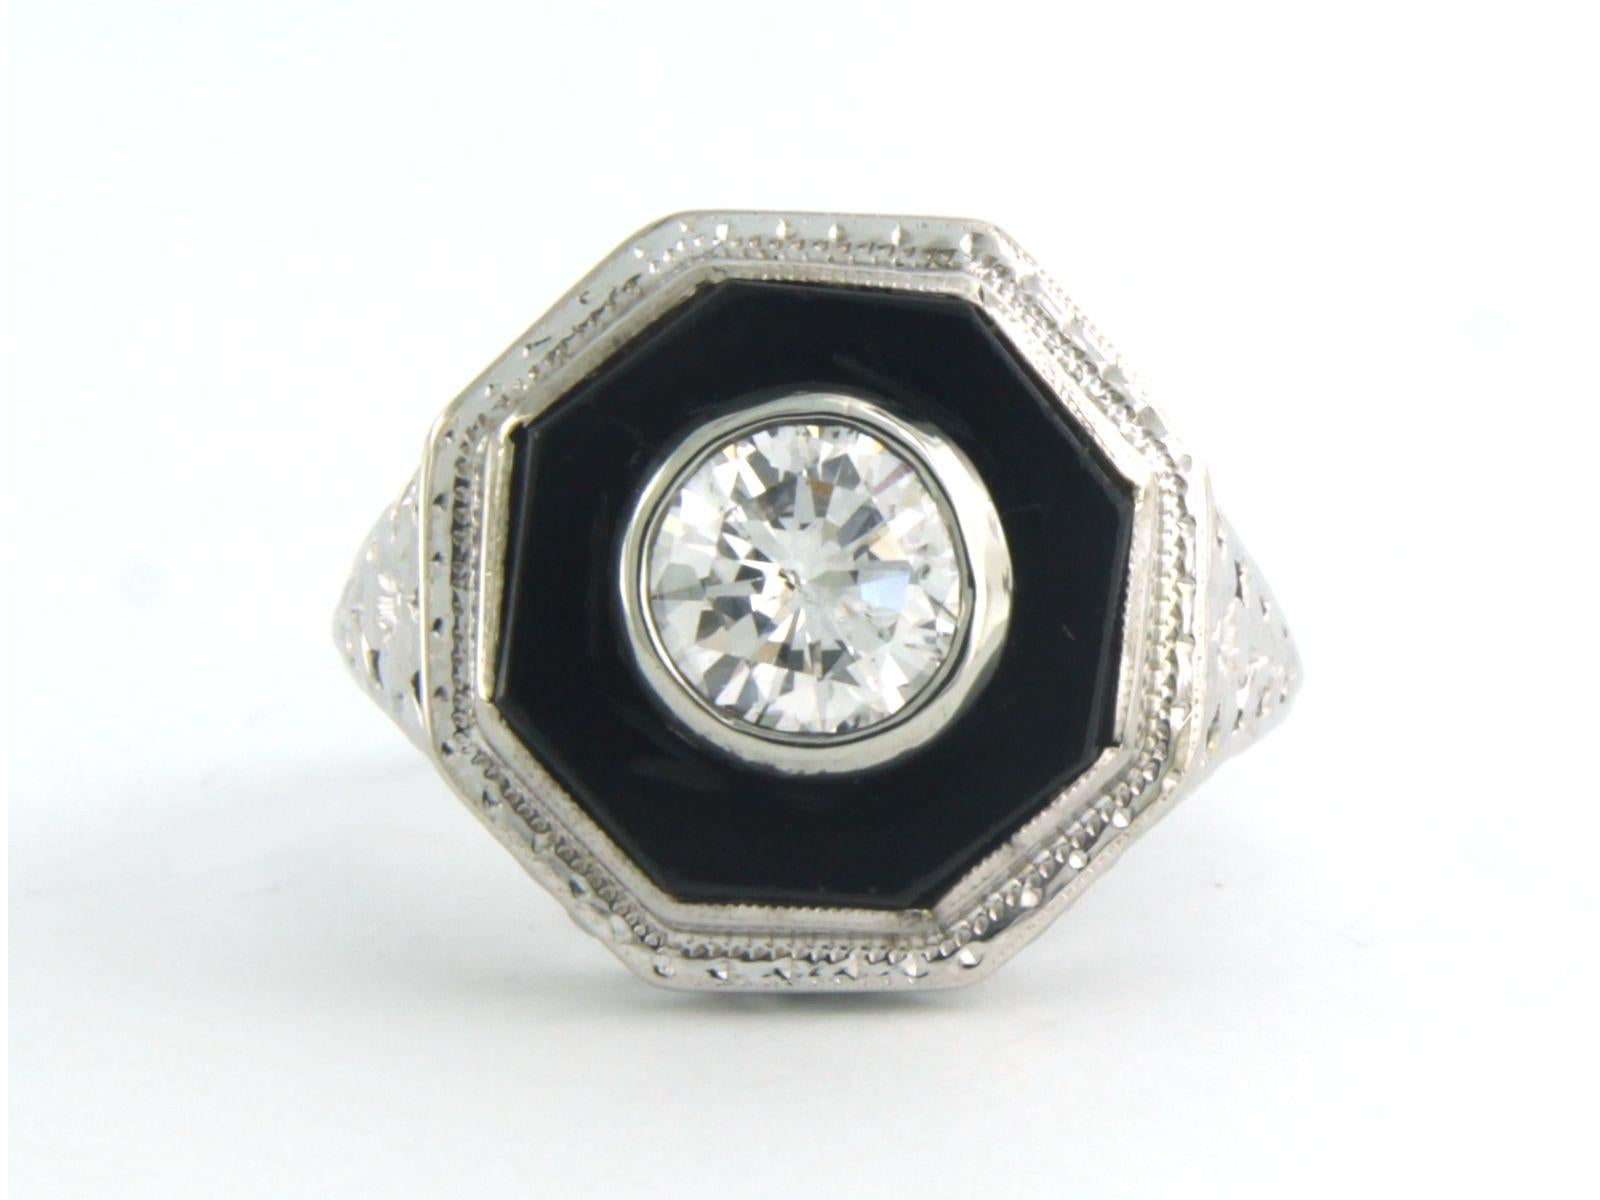 Ring aus 18 kt Weißgold, besetzt mit Onyx und Diamant im Brillantschliff 0,80 ct G/H - SI2 - Ringgröße U.S. 4,5 - EU. 15.25 (48)

ausführliche Beschreibung

Die Oberseite des Rings ist 1.5 cm breit

Gewicht 4,5 Gramm

Ringgröße U.S. 4.5 - EU. 15.25